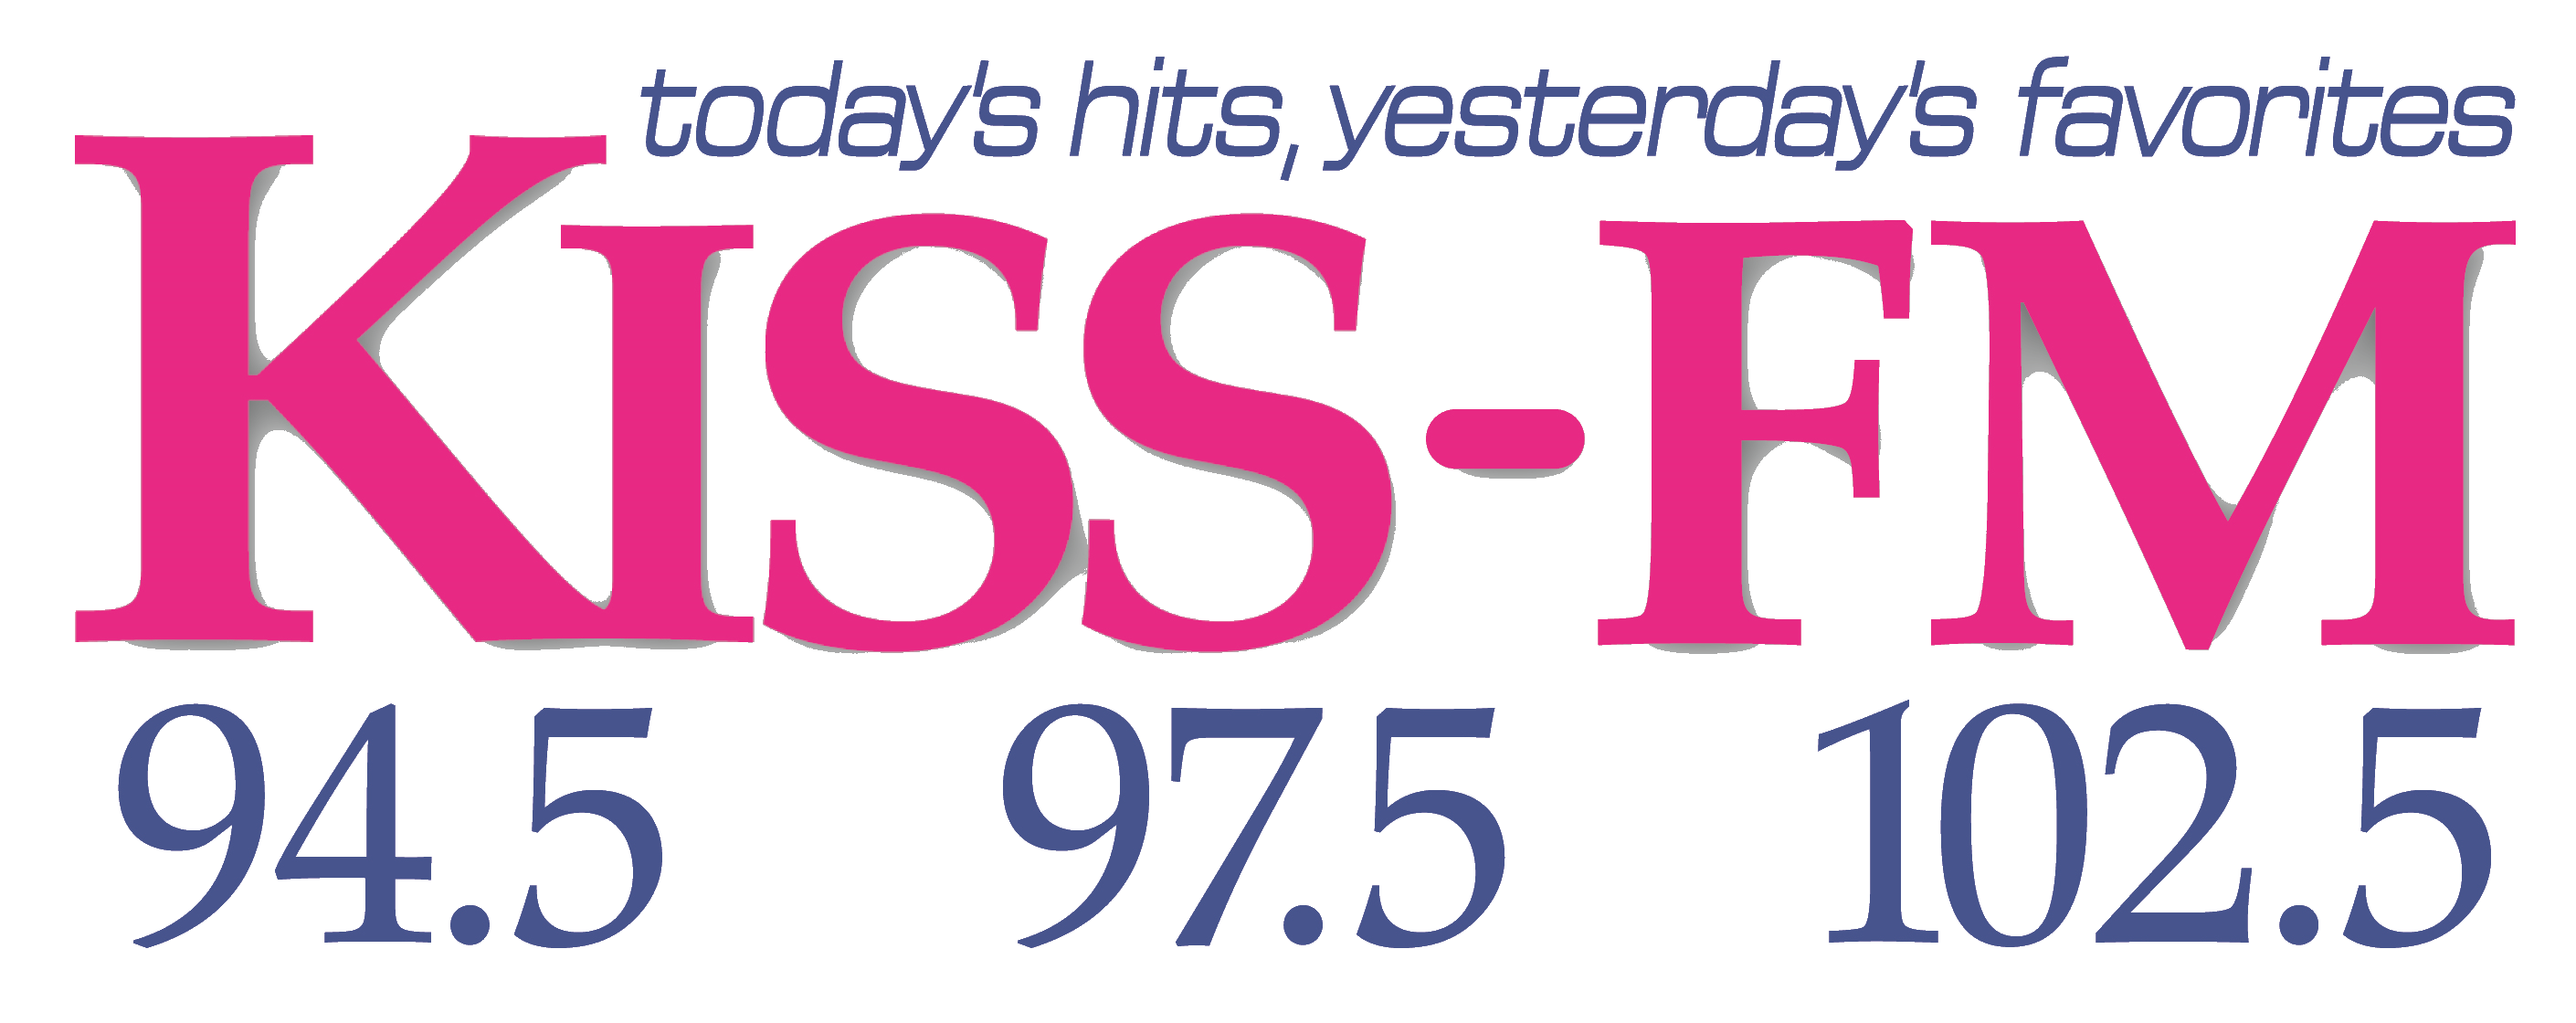 Kiss-FM 94.5 - 97.5 - 102.5 Logo